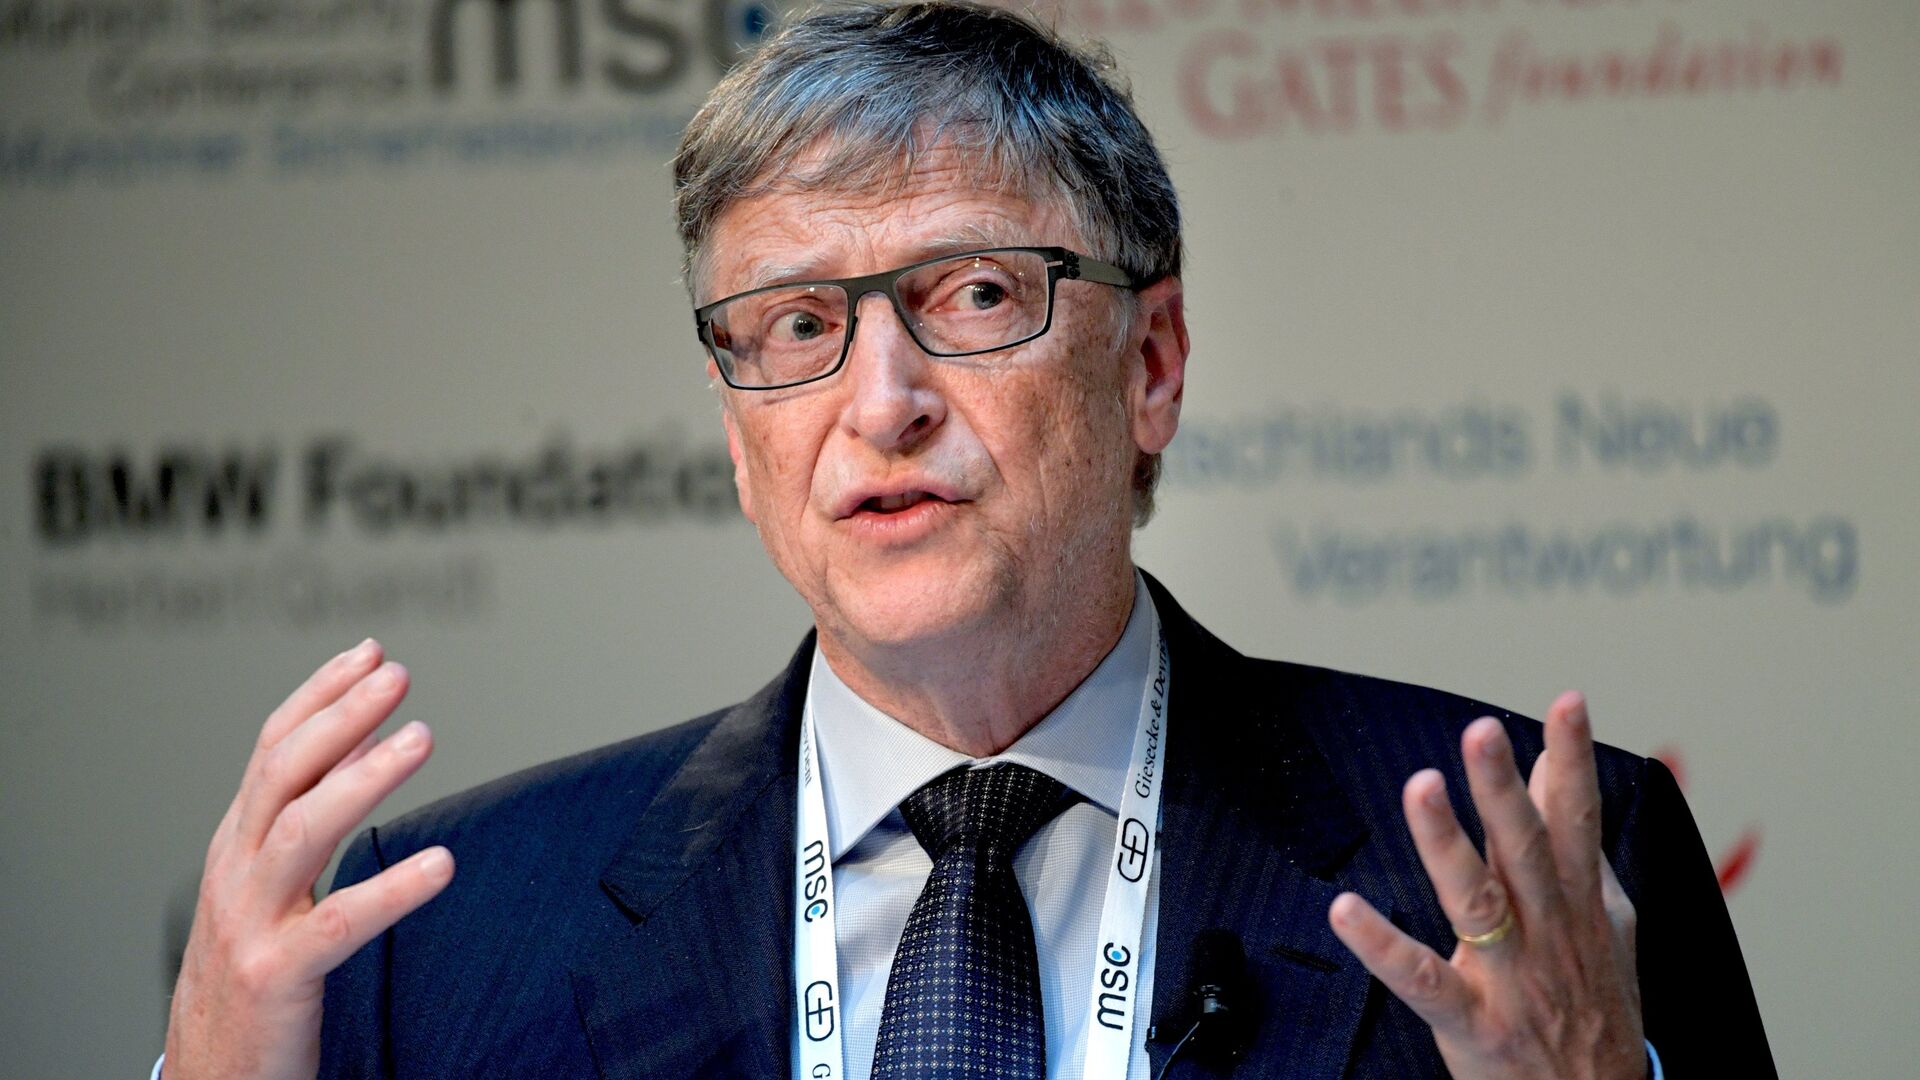 Как ИИ изменит здравоохранение, образование и другие процессы — прогноз Билла Гейтса